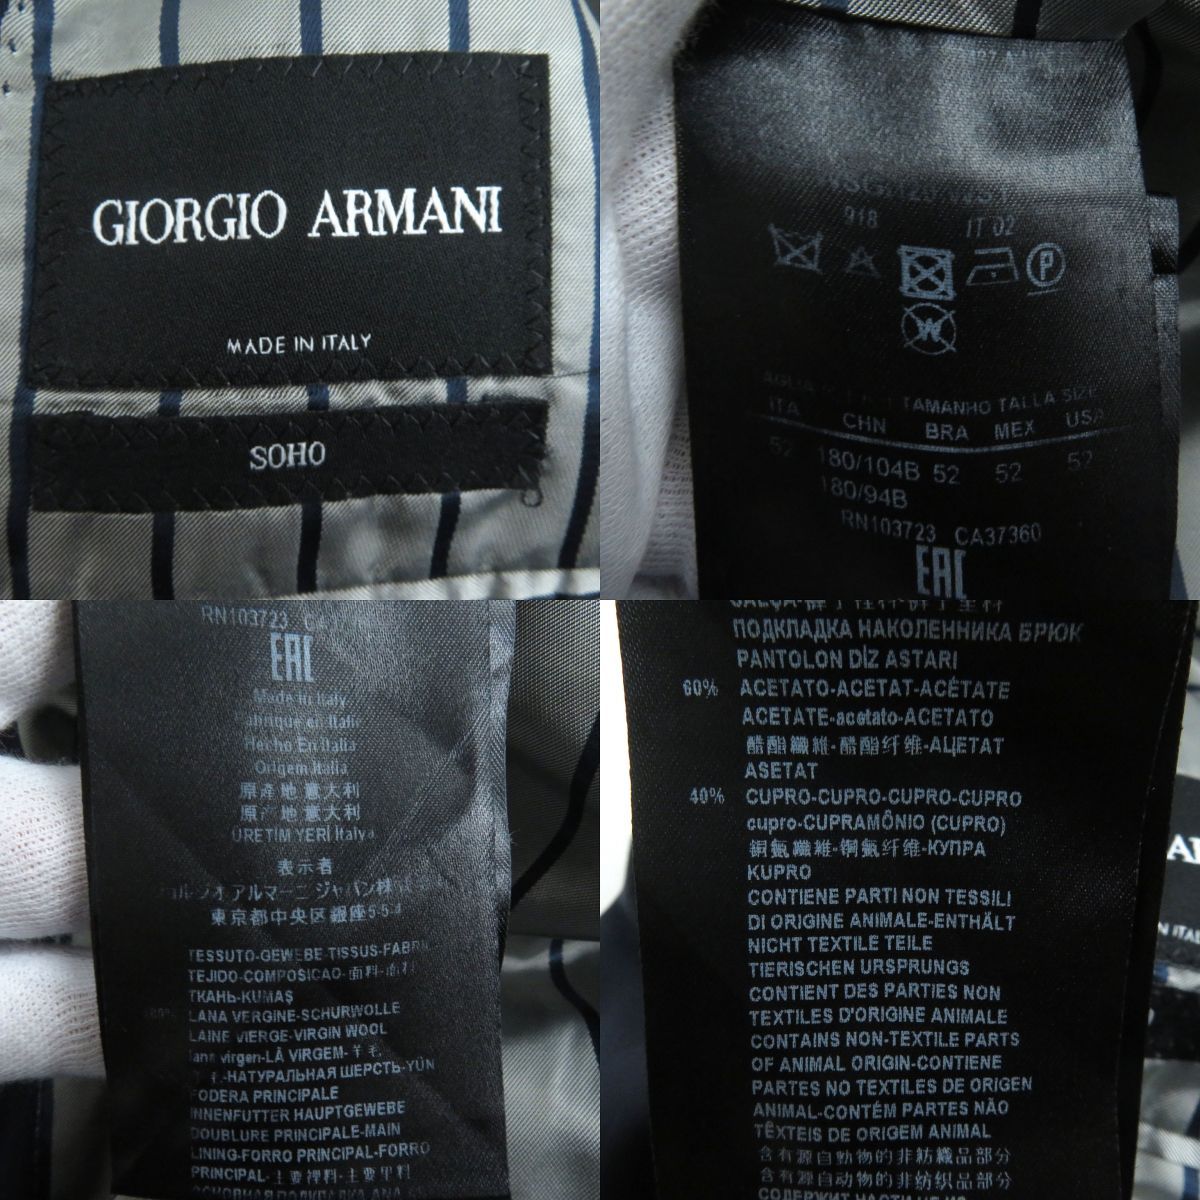 極美品□2019年製 黒タグ GIORGIO ARMANI/ジョルジオアルマーニ ストライプ柄 SOHO シングルスーツ 上下セットアップ ダークグレー 52 伊製